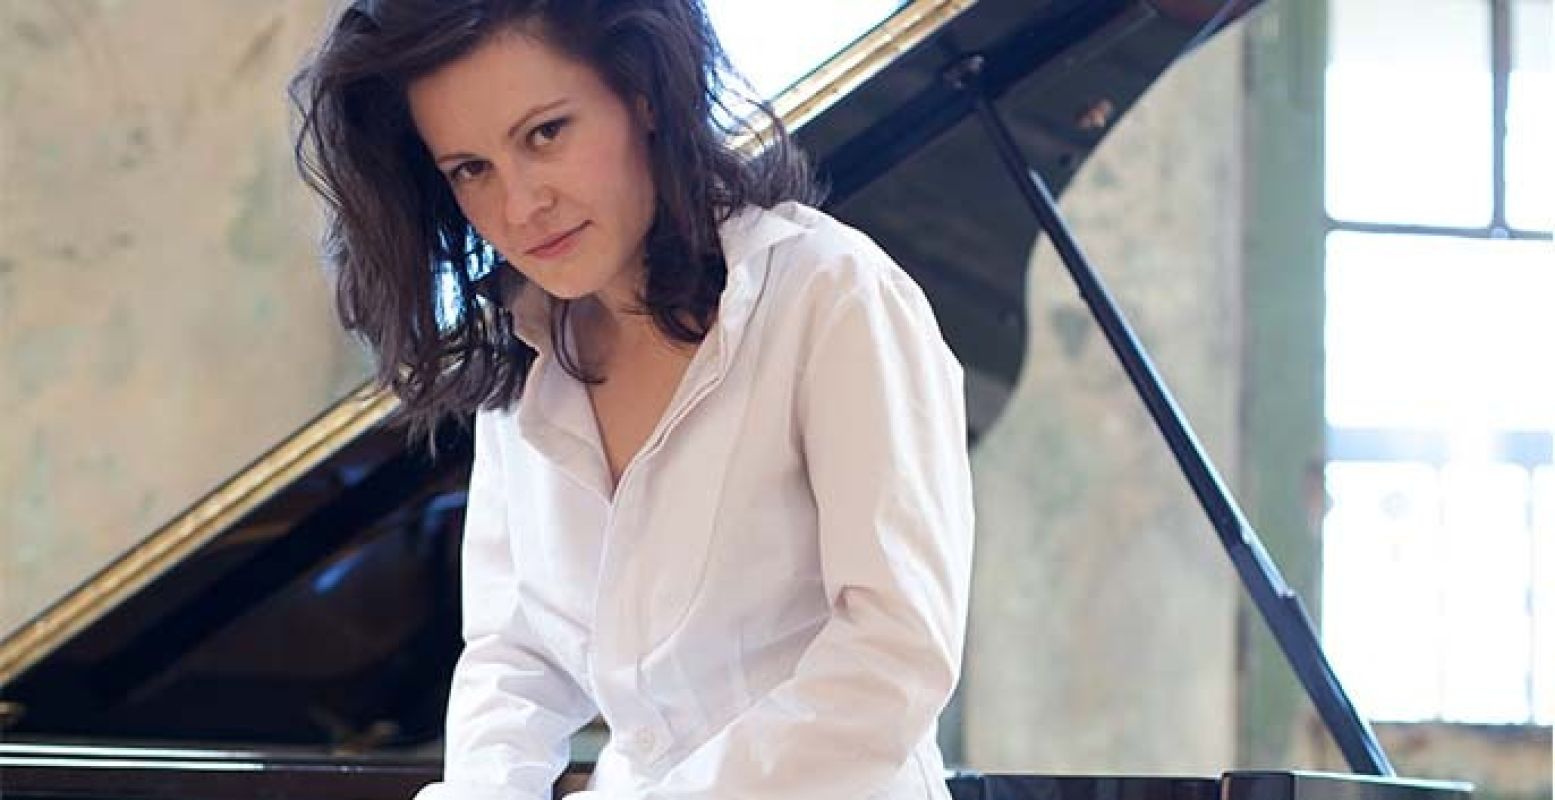 Pianiste Hanna Shybayeva speelde mee op de cd en tijdens het concert op 20 februari. Foto: Promotiebeeld